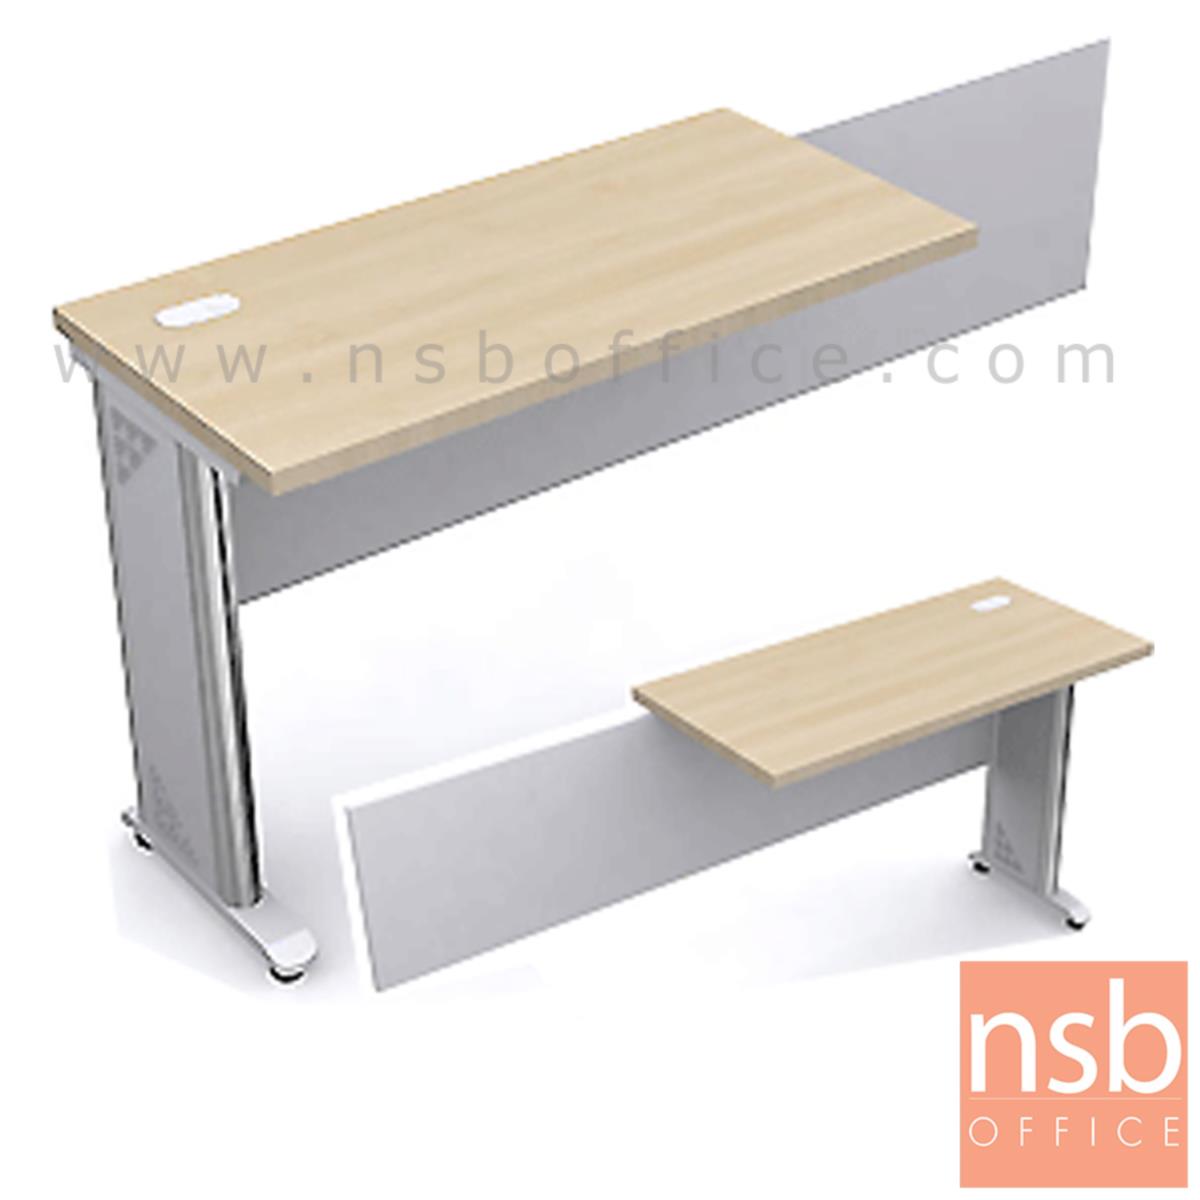 A06A006:โต๊ะเข้ามุม ขนาด 100W*75H cm.   พร้อมบังโป๊ข้างยื่นถึงโต๊ะทำงานตรง